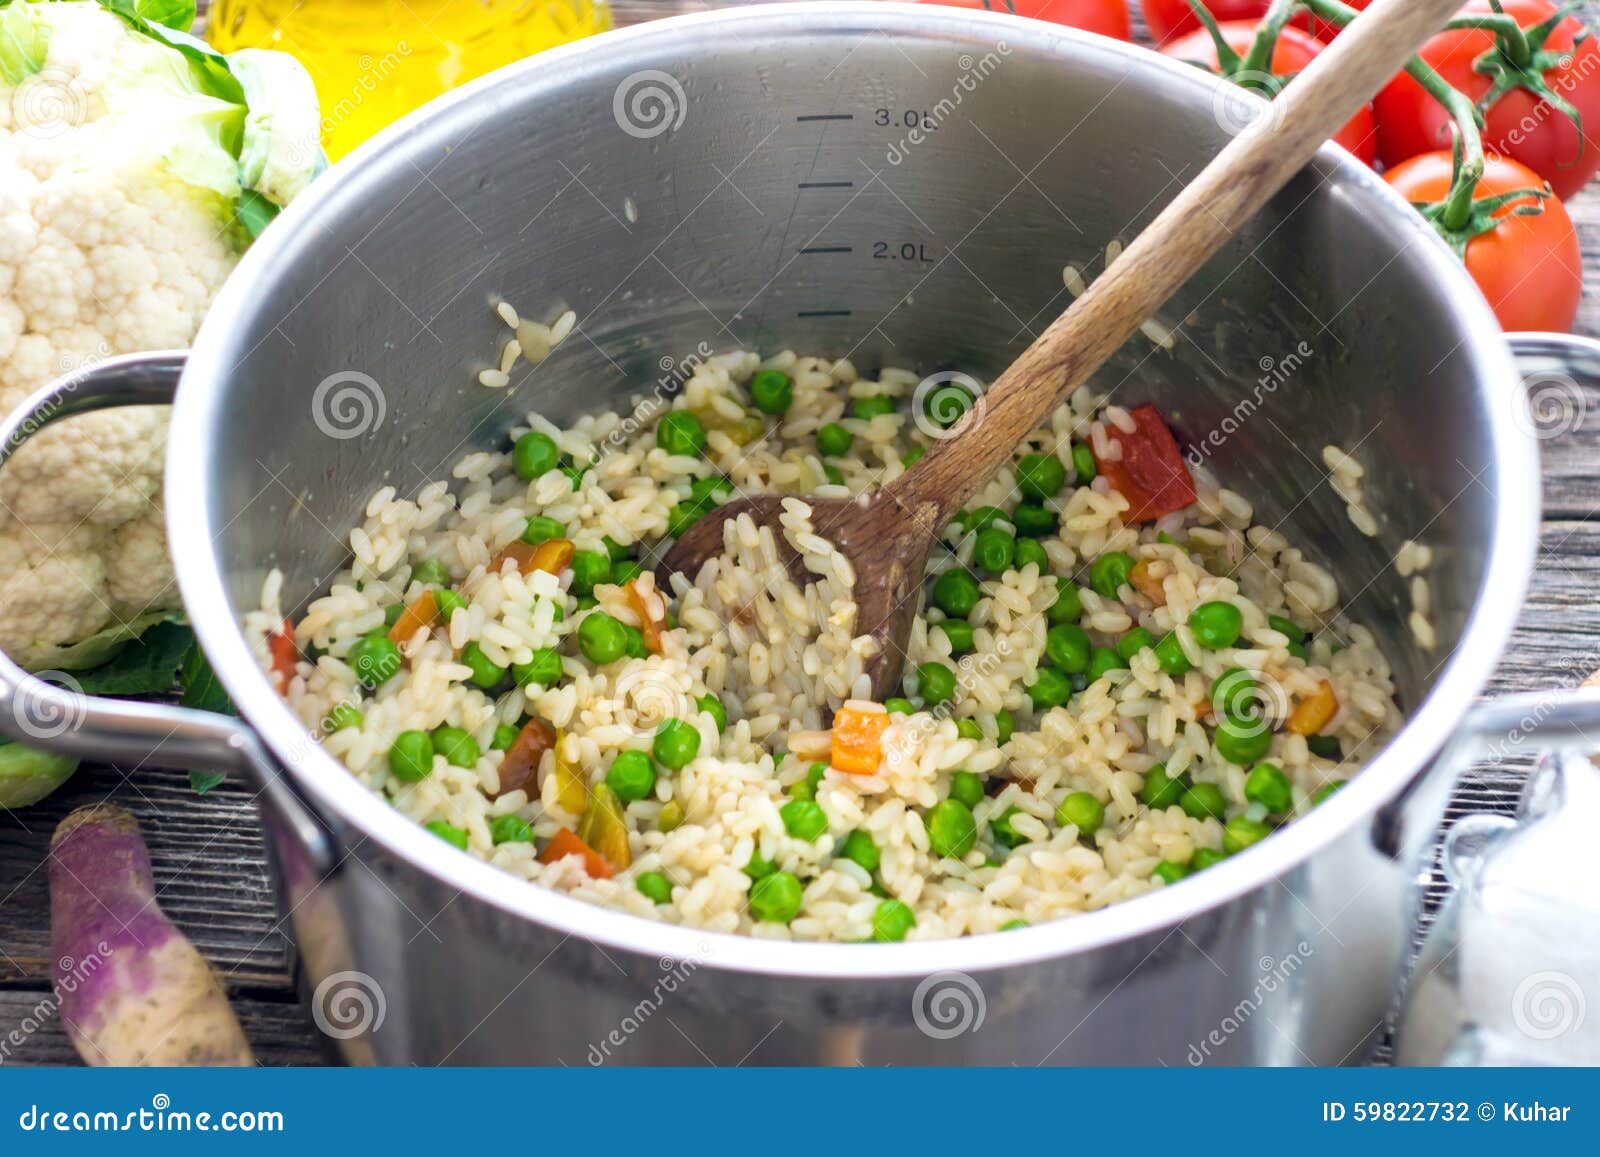 Жарено вареный рис. Варка риса. Способ приготовления риса. Способы готовки риса. Промыть рис.